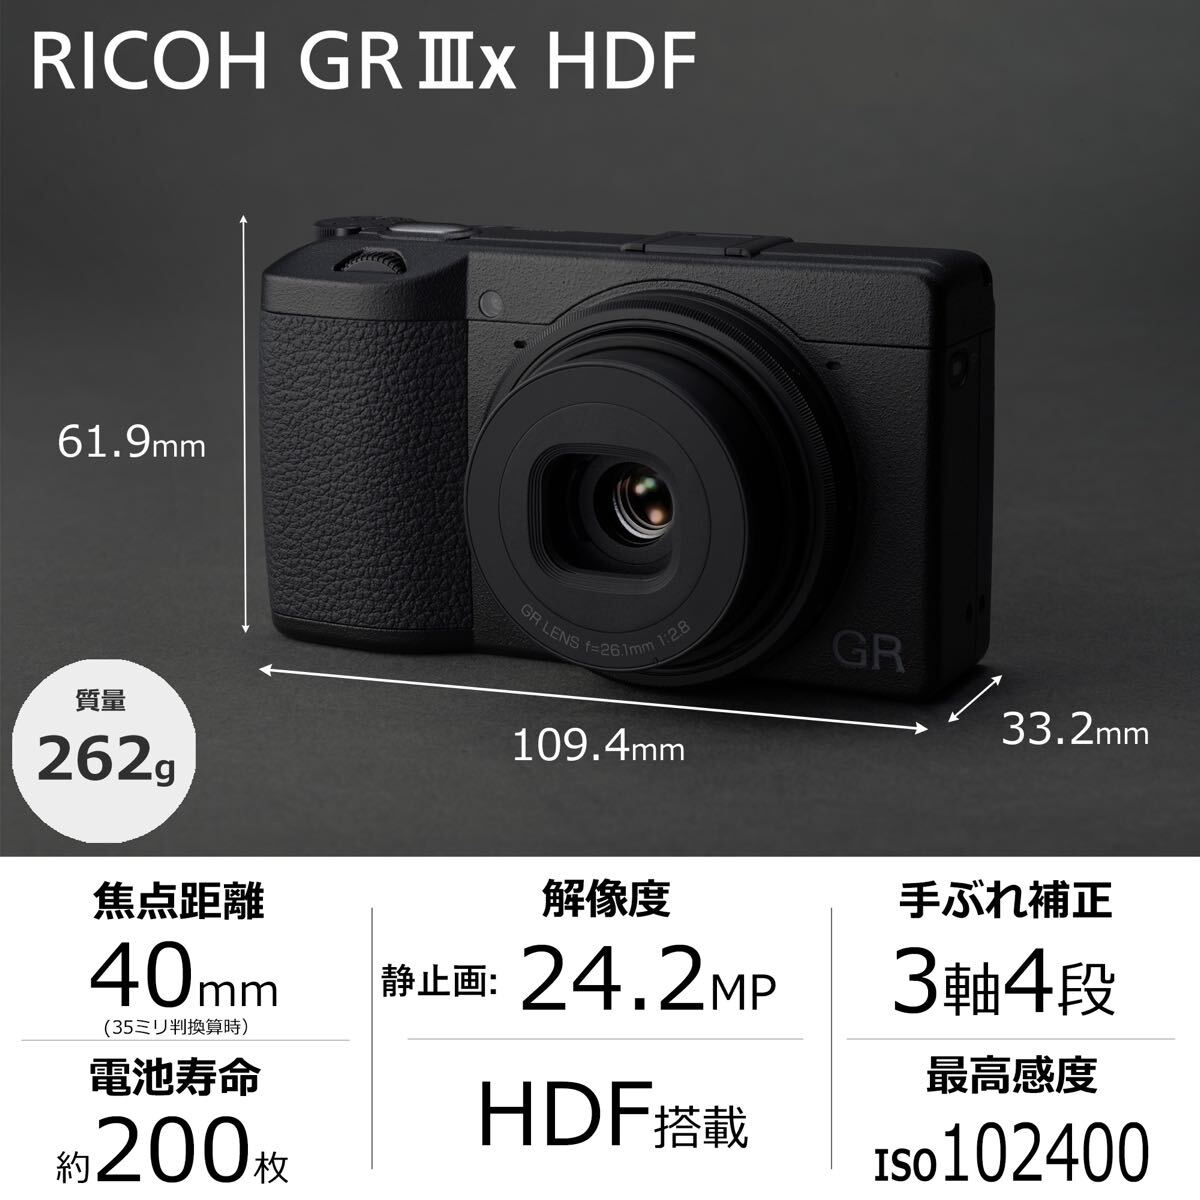  новый товар нераспечатанный!3 год гарантия!RICOH GR IIIx HDF GR3x специальный модель Ricoh высокого уровня компактный цифровой фотоаппарат подарок подарок ..